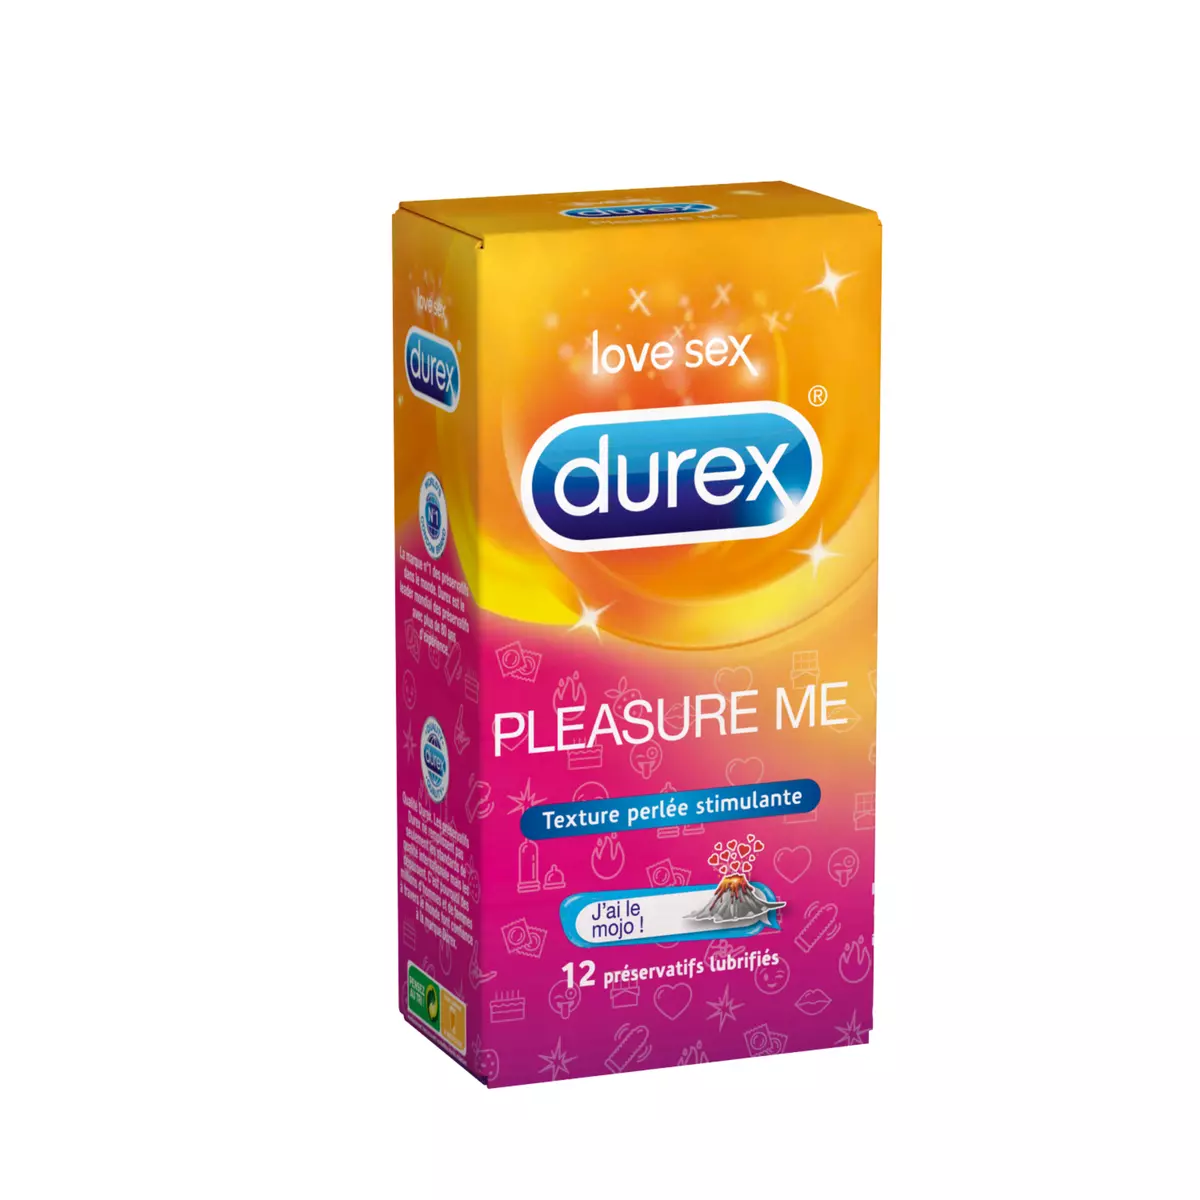 DUREX Pleasure Me préservatifs lubrifiés perlés et nervurés 12 préservatifs